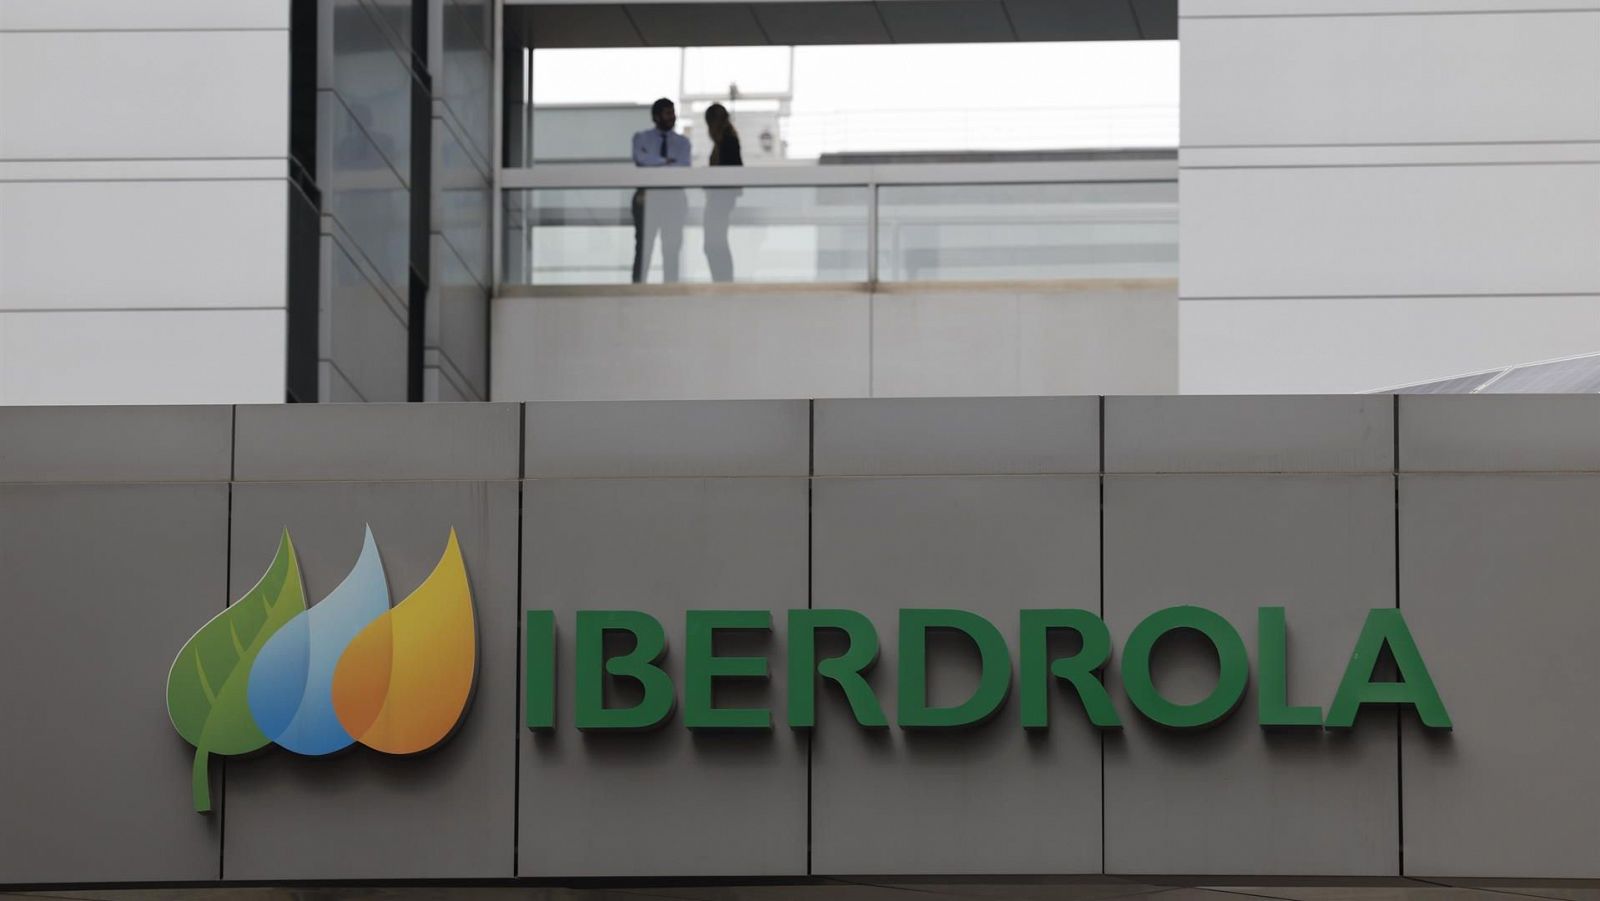 Iberdrola sufre un ciberataque que deja expuestos los datos de más de 600.000 clientes